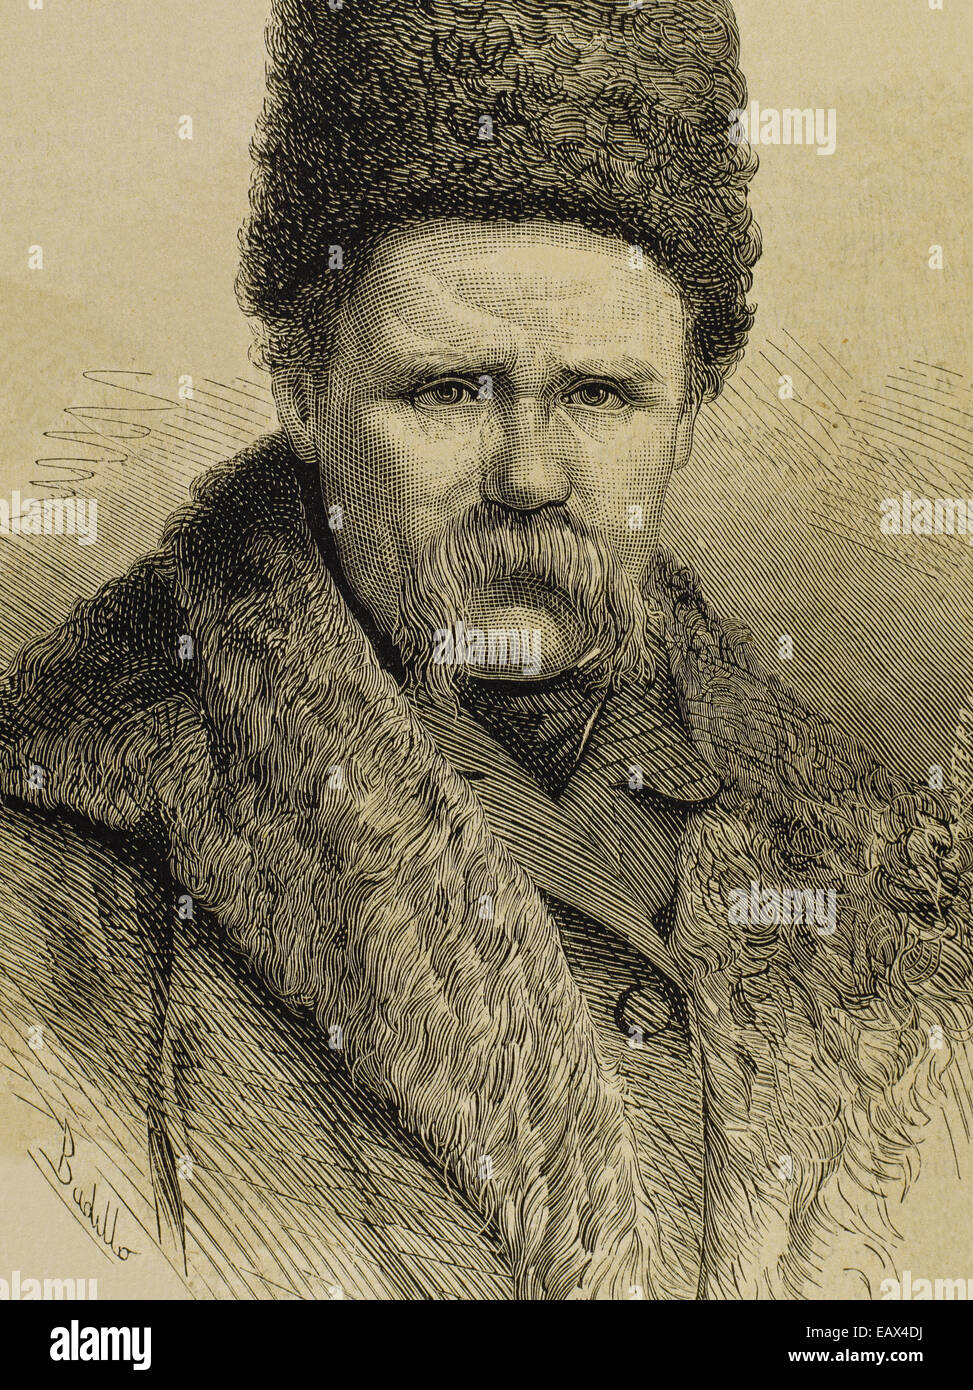 Taras Shevchenko (1814-1861). Poète ukrainien. Portrait. Gravure de la Ilustracion Espanola y Americana, 1877. Banque D'Images